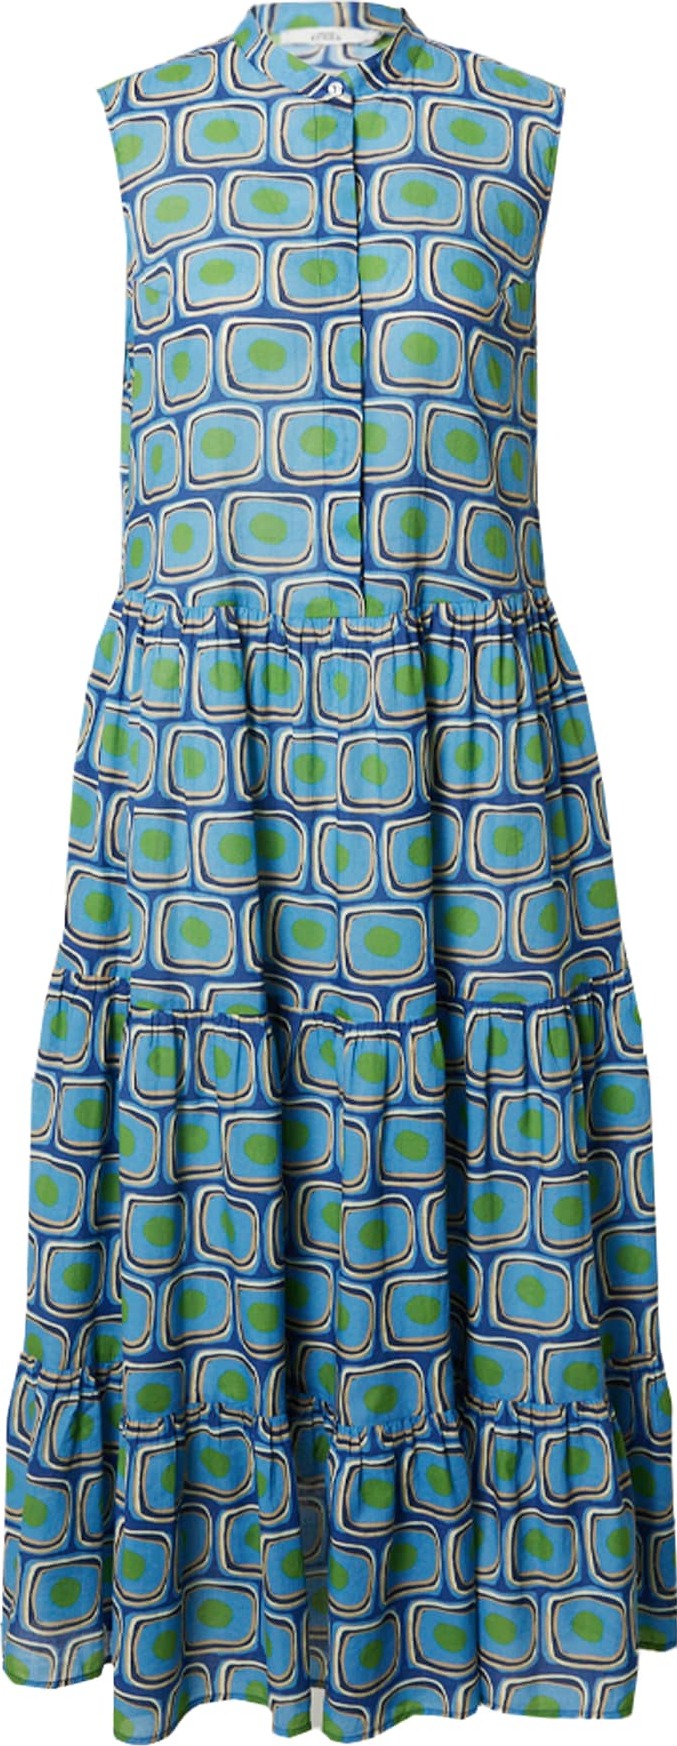 0039 Italy Košilové šaty 'Mila' nebeská modř / světlemodrá / zelená / bílá